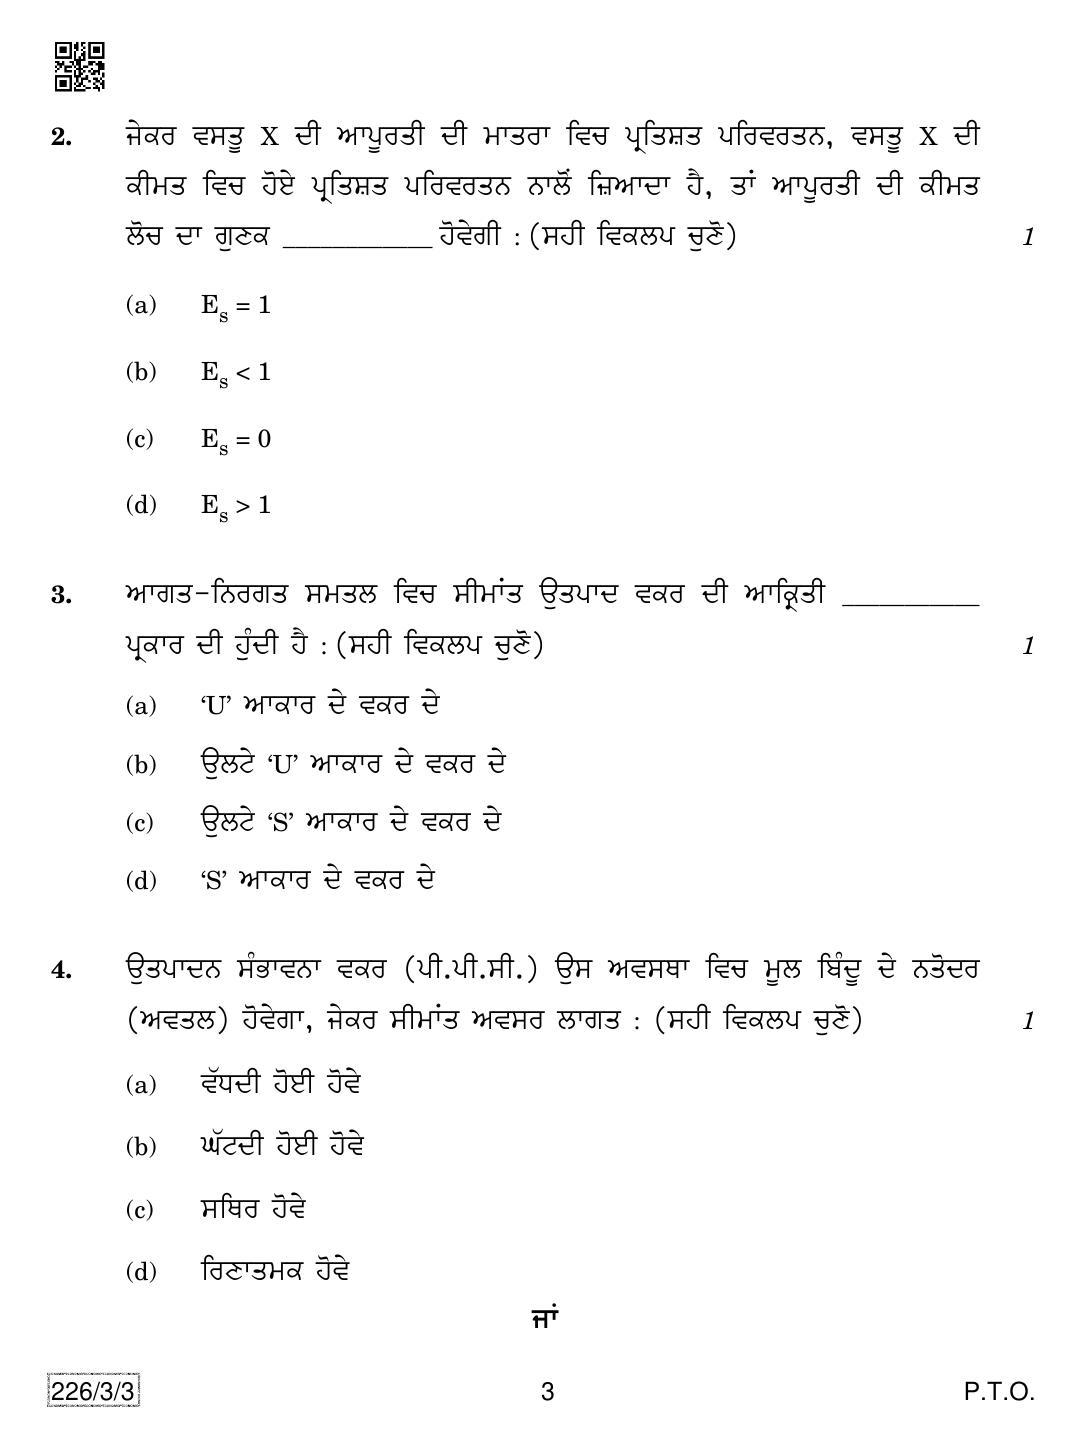 CBSE Class 12 226-3-3 Economics (Punjabi) 2019 Question Paper - Page 3